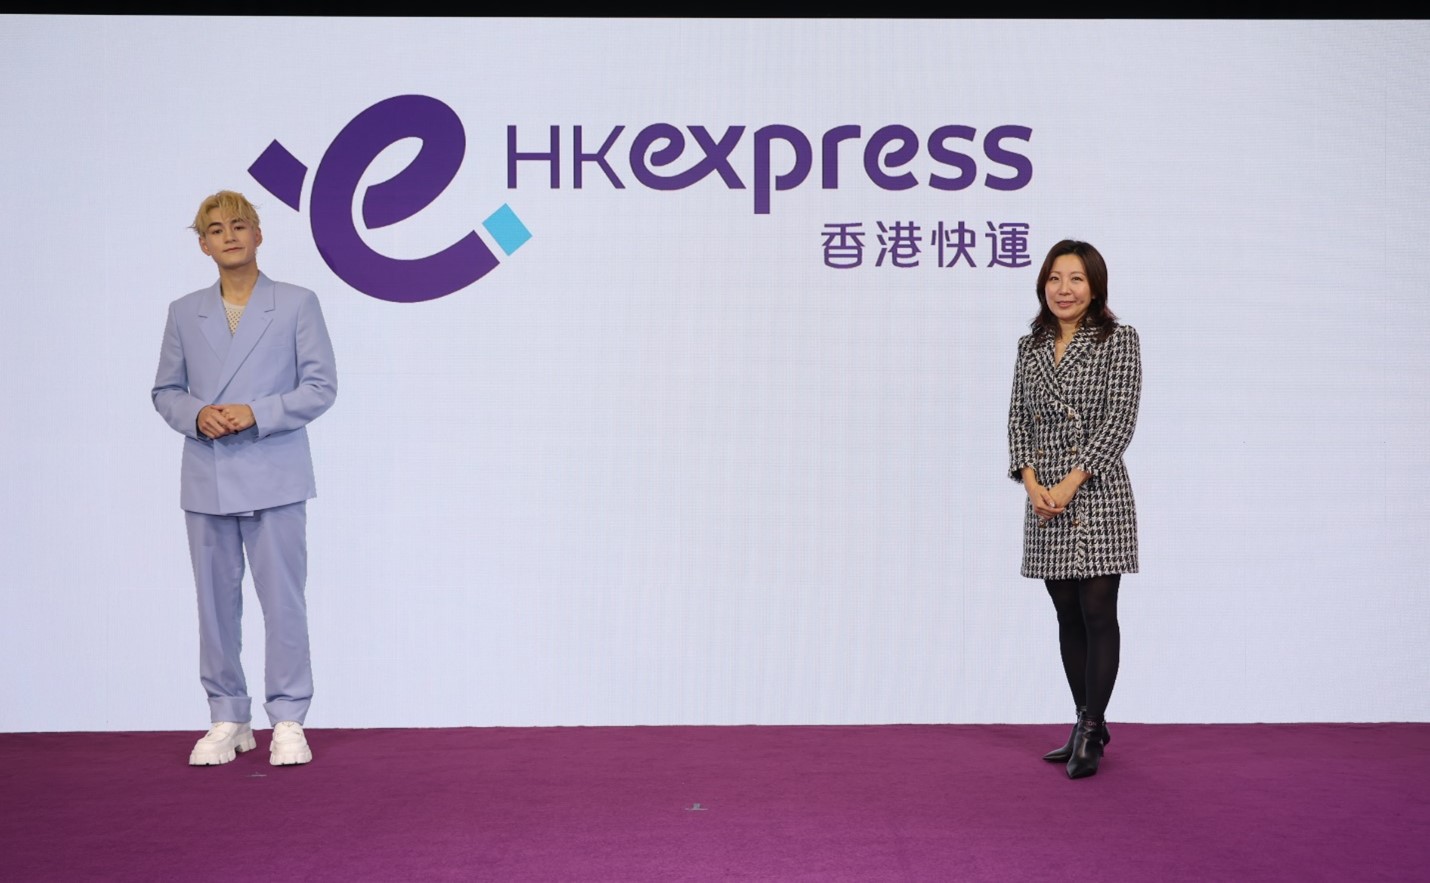 香港快运航空行政总裁及魏浚笙先生与新品牌标志合照